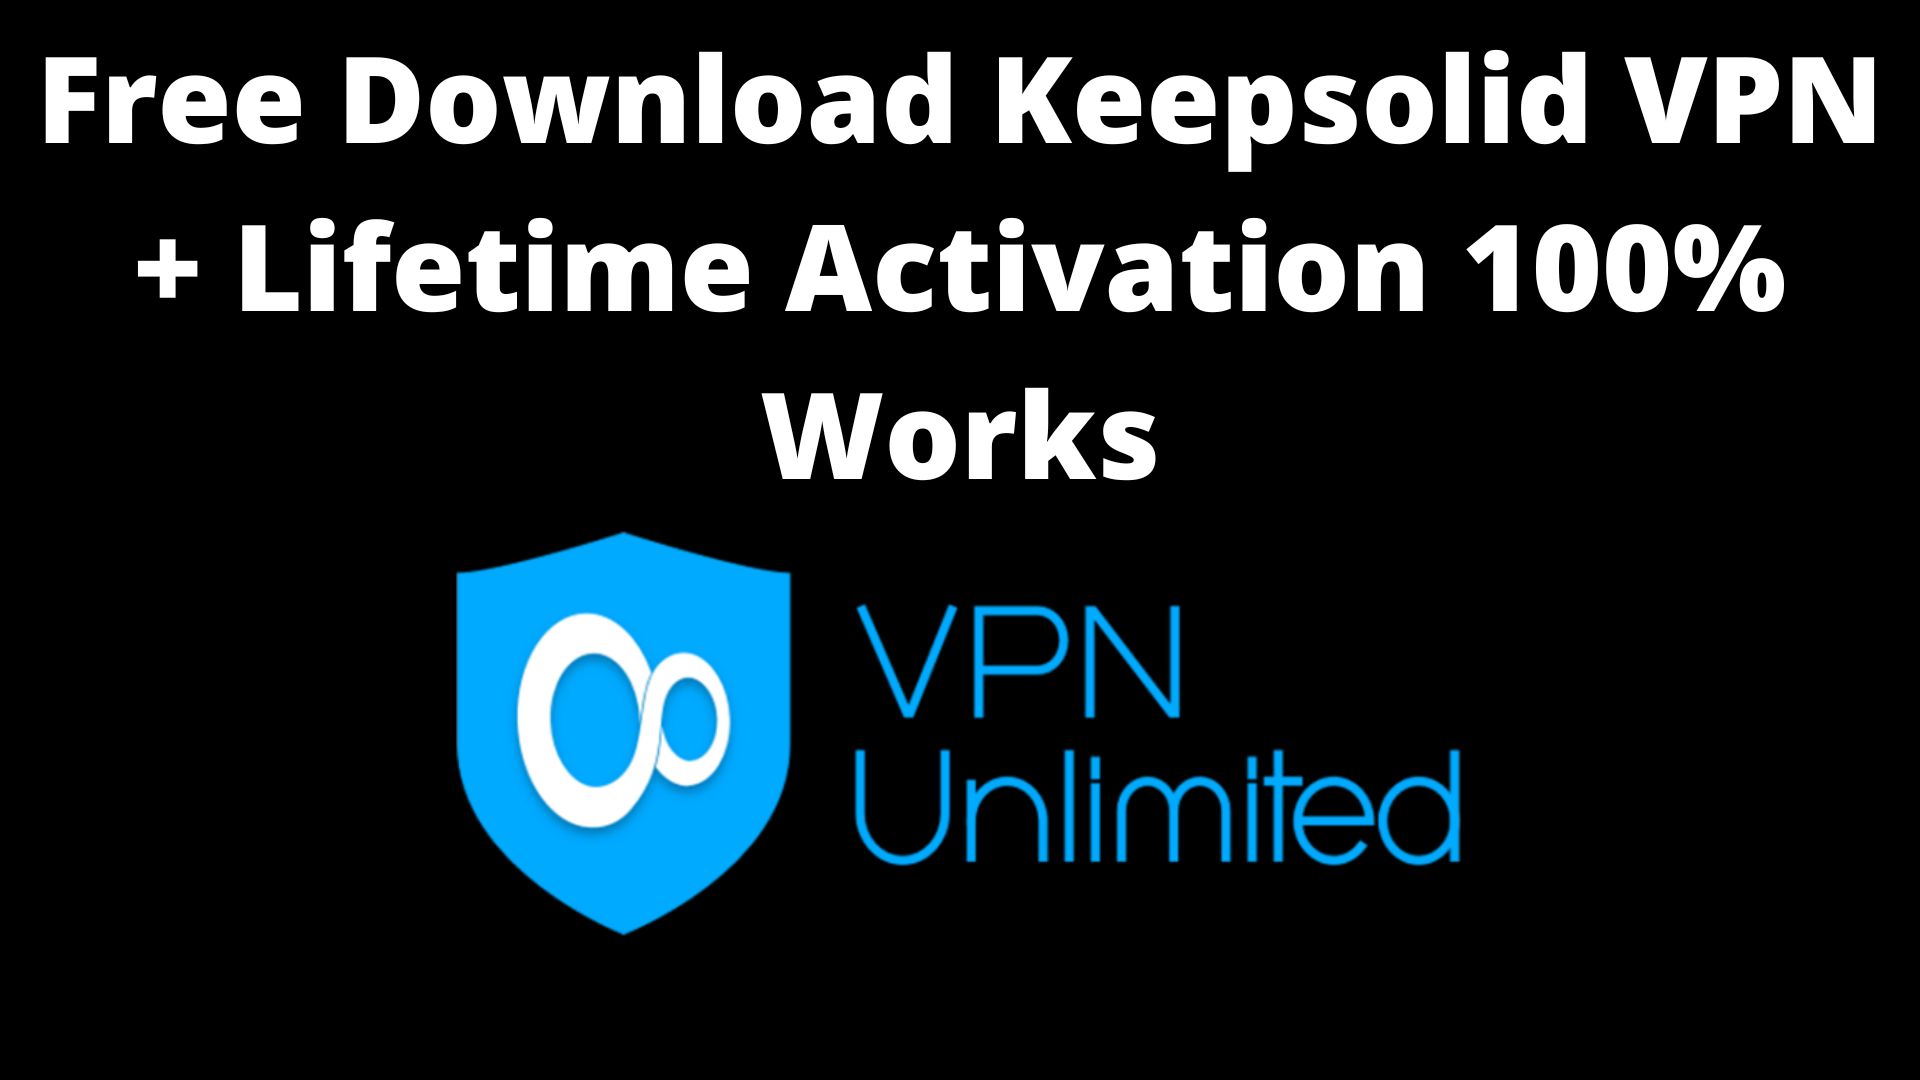 Free Download Keepsolid VPN + Lifetime Activation 100% WorksBenefits of KeepSolid VPN Unlimited Lifetime Deal